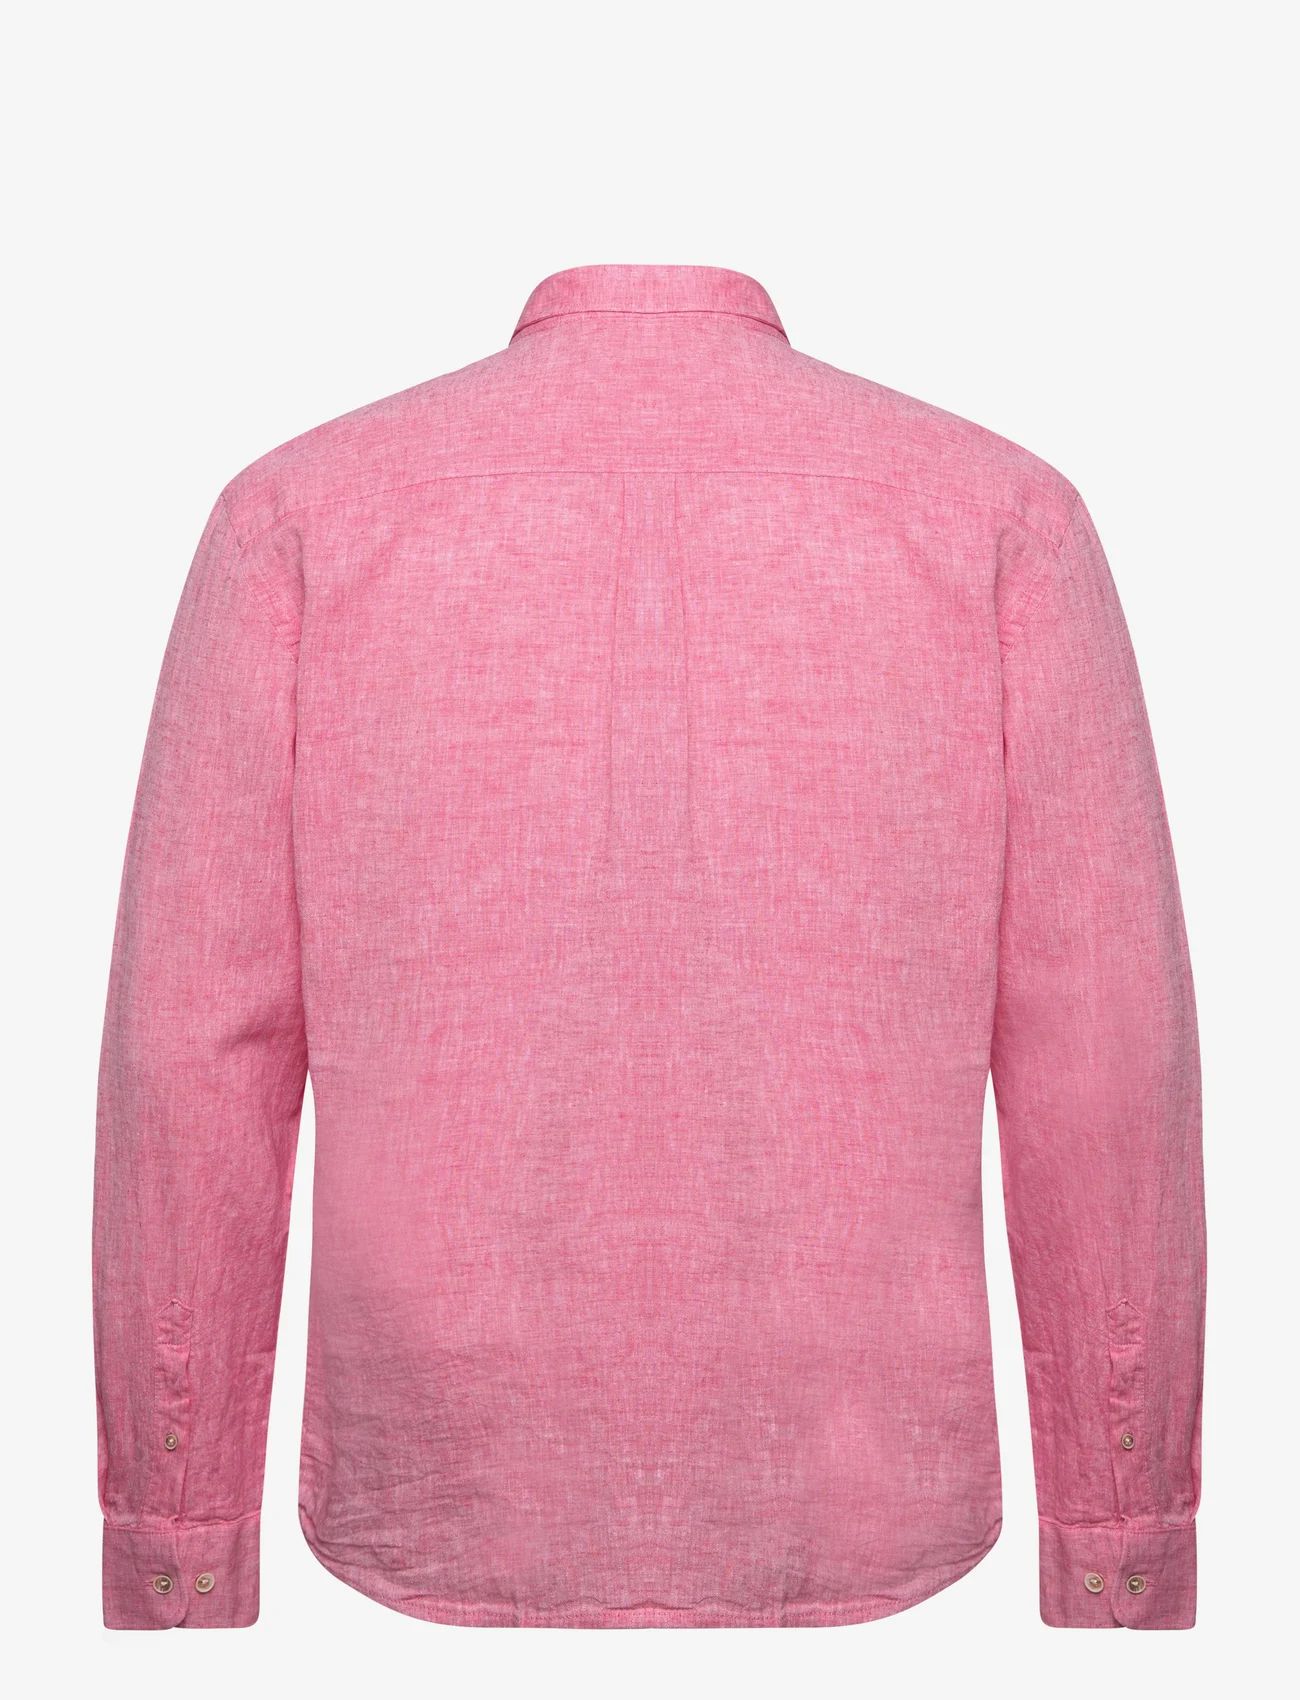 Lindbergh - Cotton/linen shirt L/S - hørskjorter - pink - 1